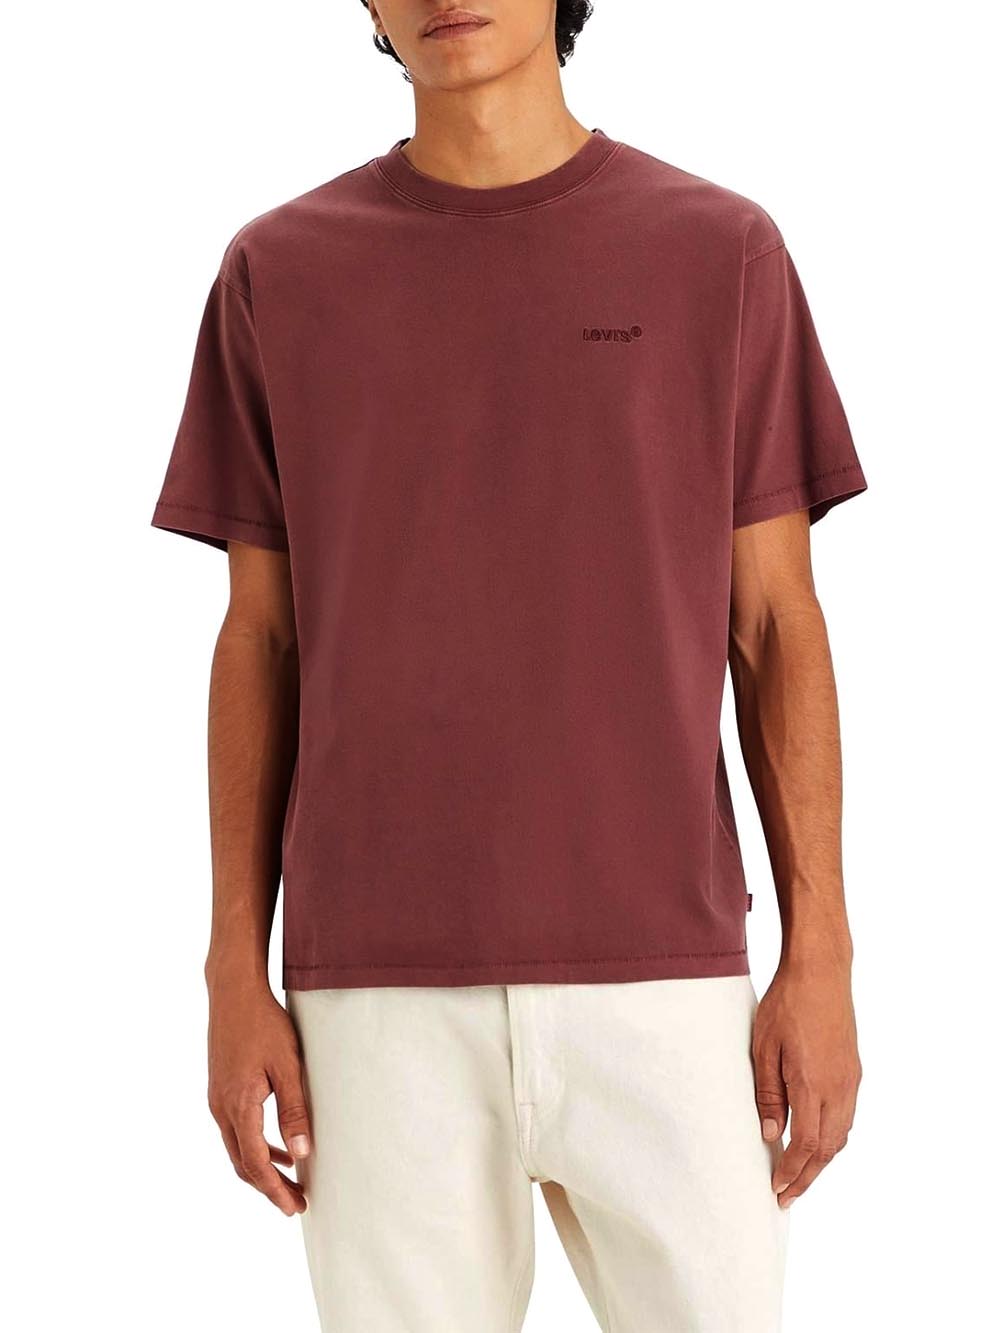 Levi's T-shirt Uomo Bordeaux